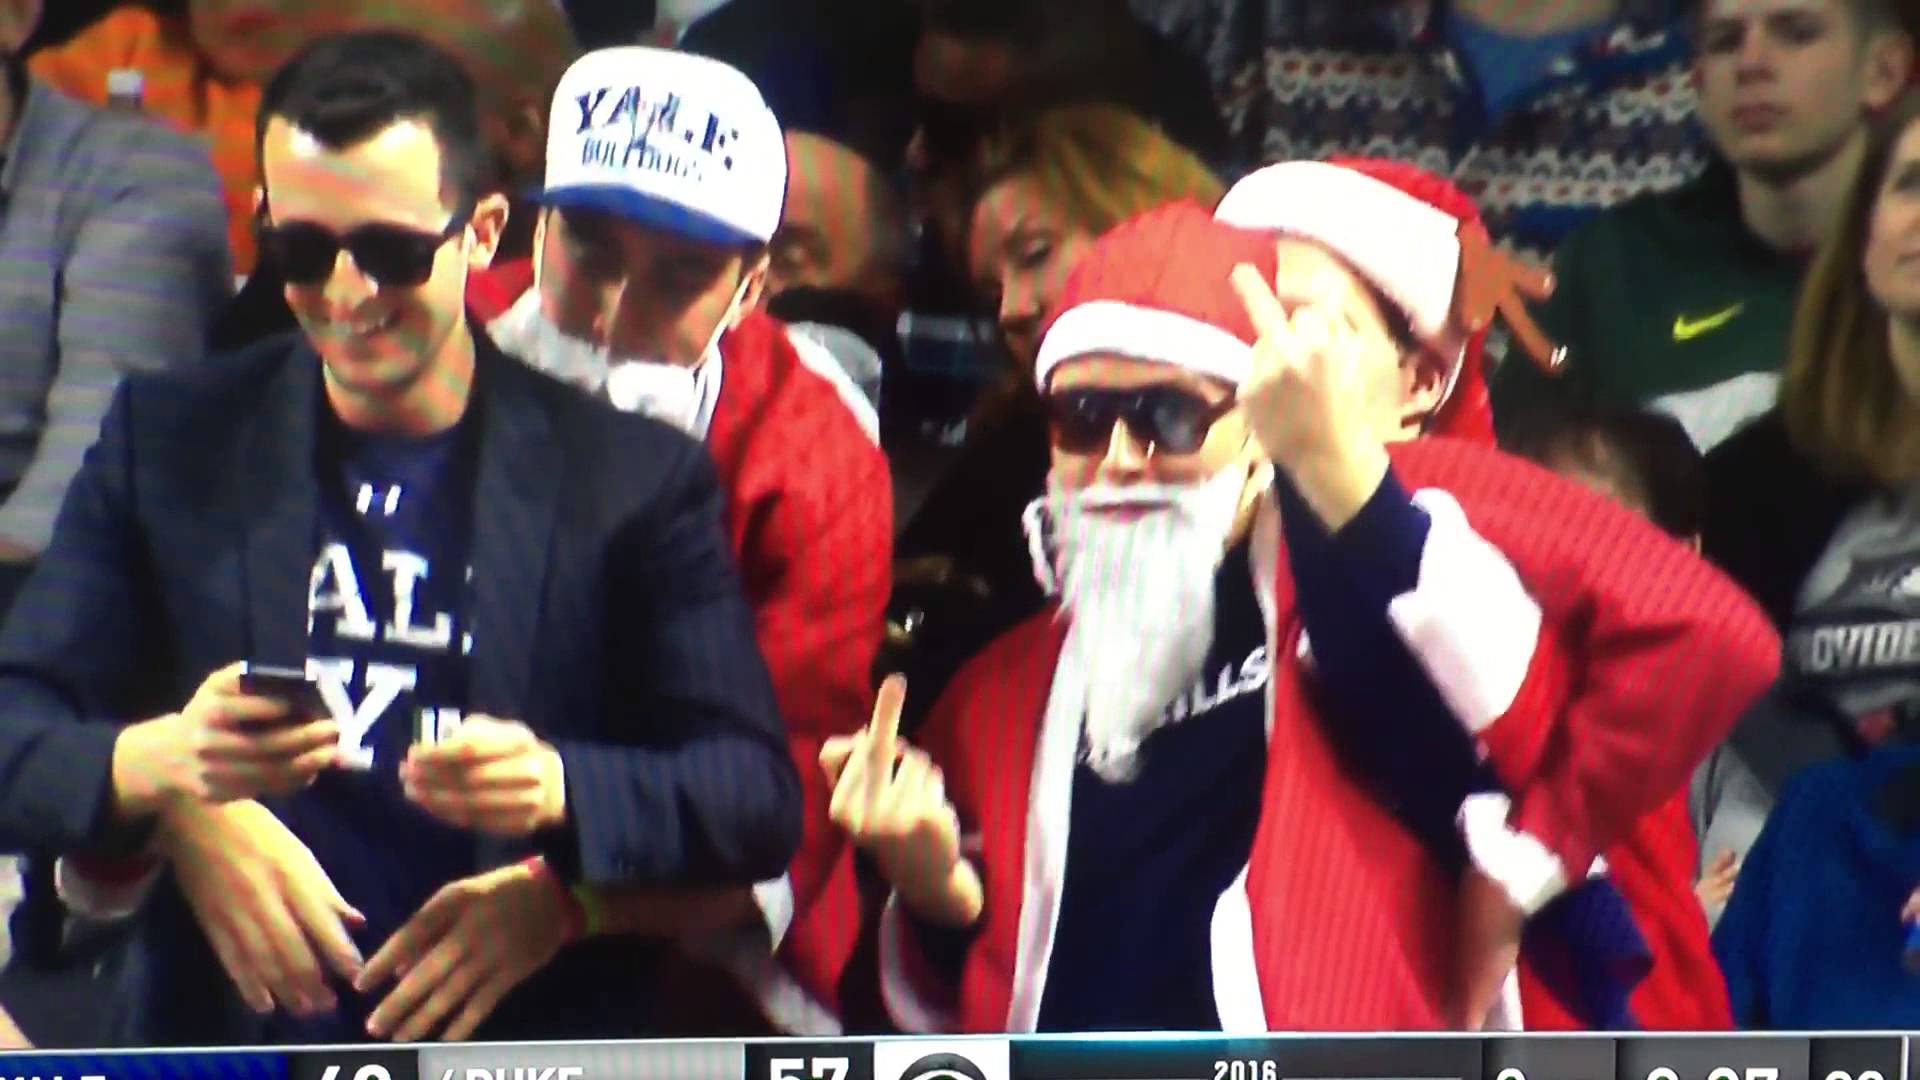 Yale fan dressed as Santa flips middle fingers at Duke